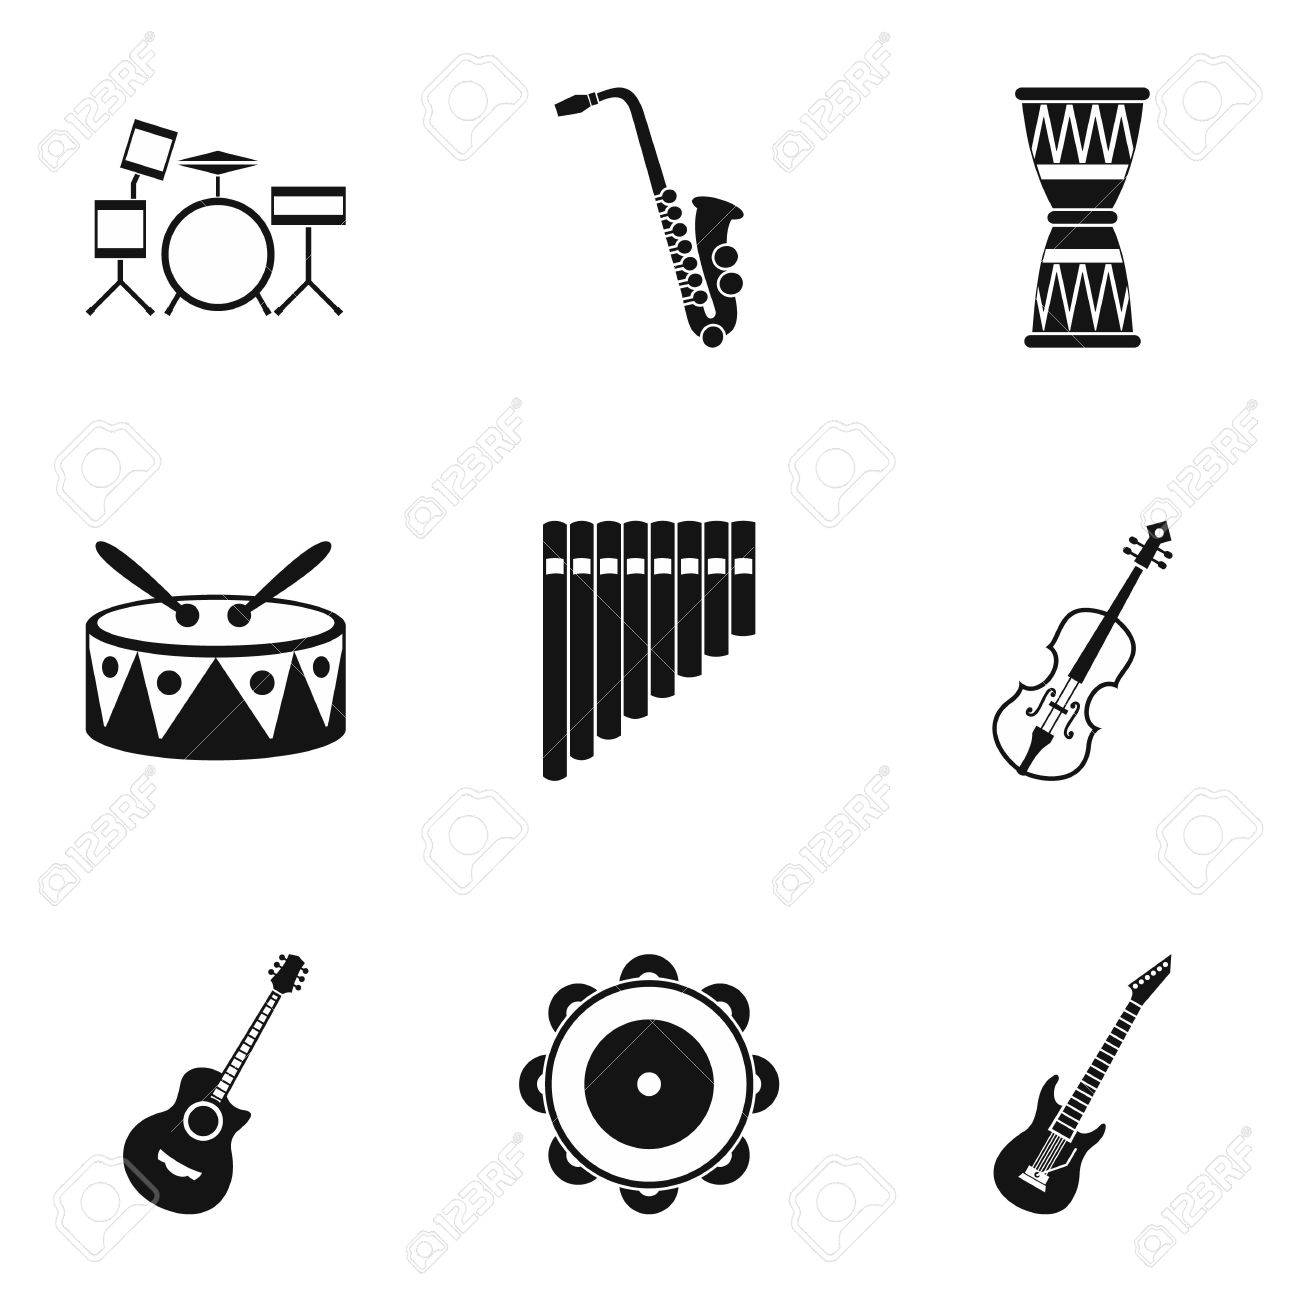 Jeu D'icônes D'instruments De Musique. Illustration Simple De 9 Icônes  Vectorielles D'instruments De Musique Pour Le Web intérieur Jeu D Instruments